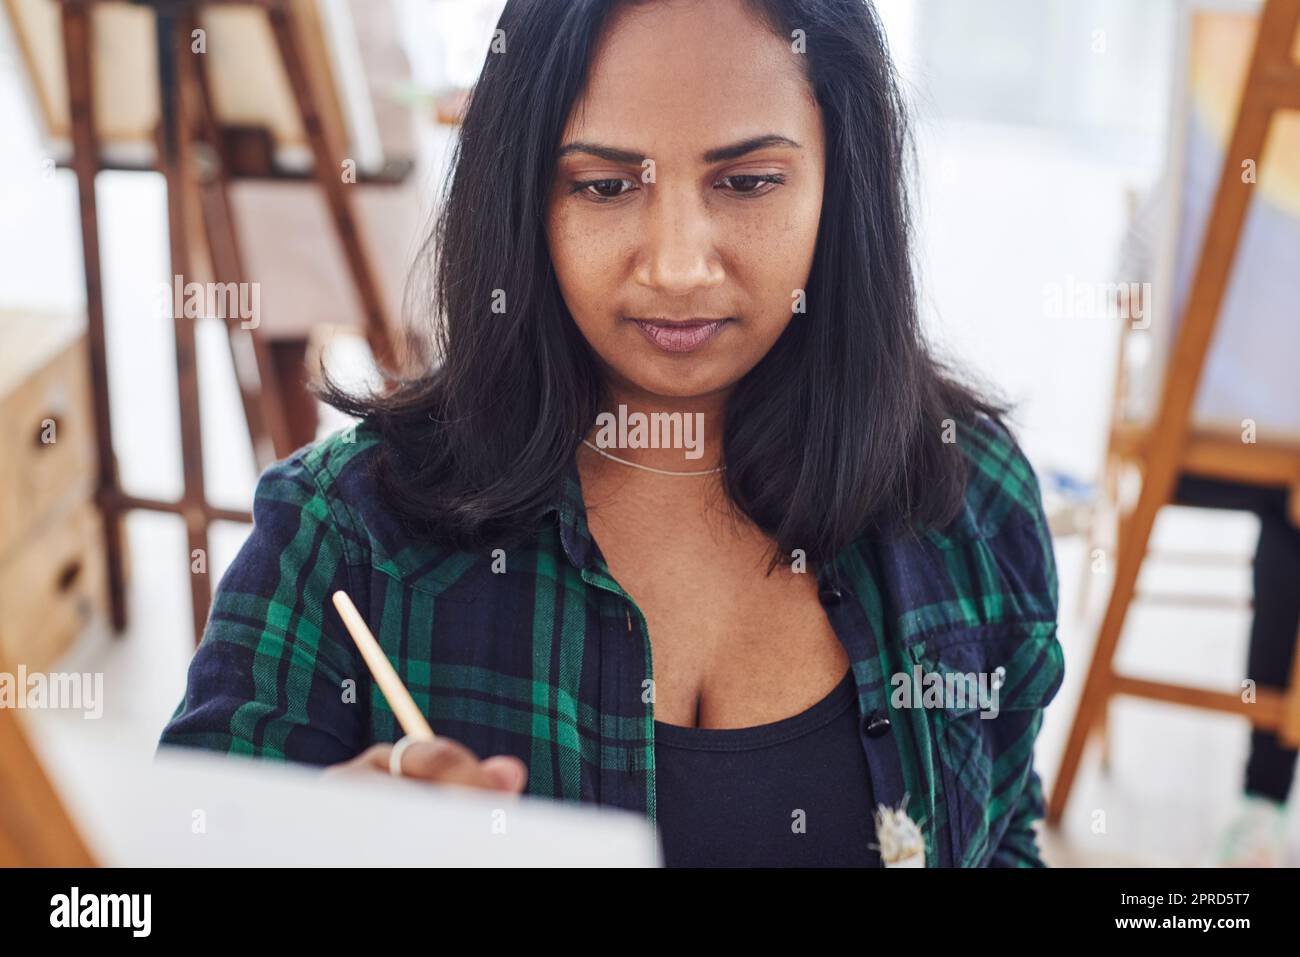 Vergiss alles andere und beginne zu kreieren. Eine schöne junge Frau malt in einem Kunststudio. Stockfoto